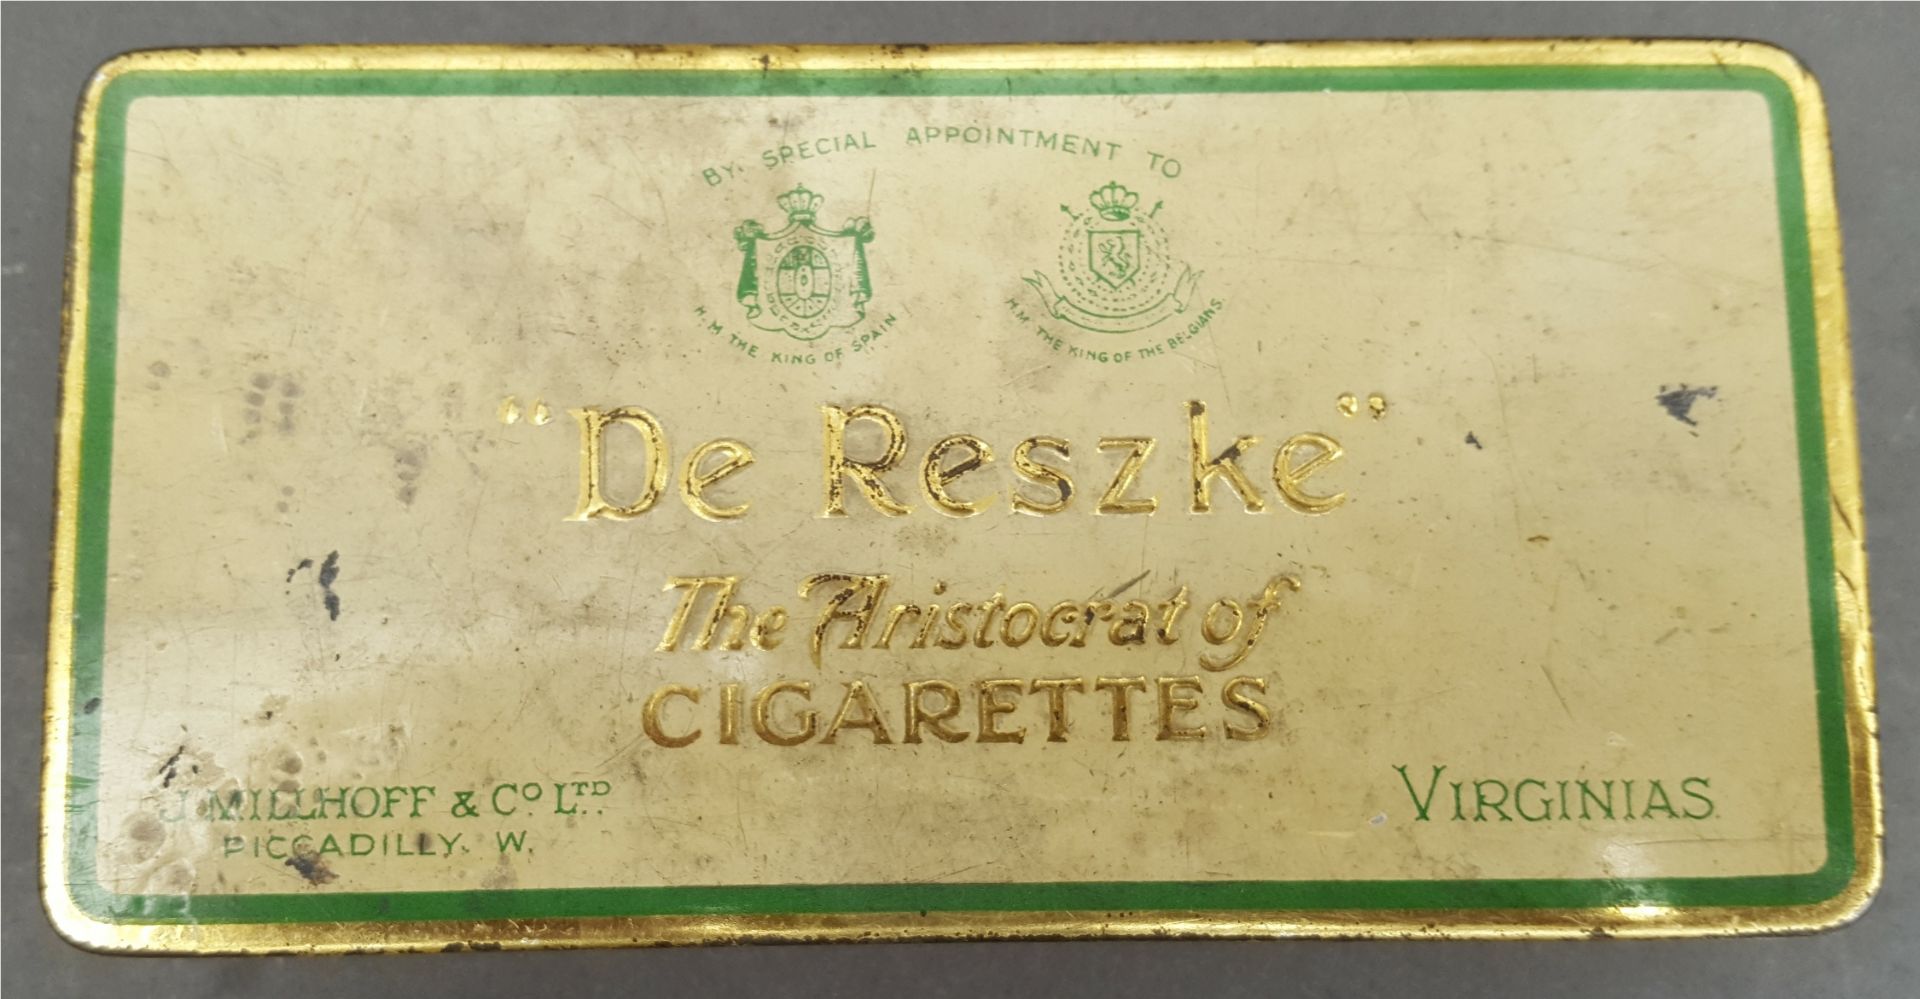 Antique Vintage Collection of 150 plus Cigarette Cards in a De Reszke Cigarette Tin - Bild 2 aus 2